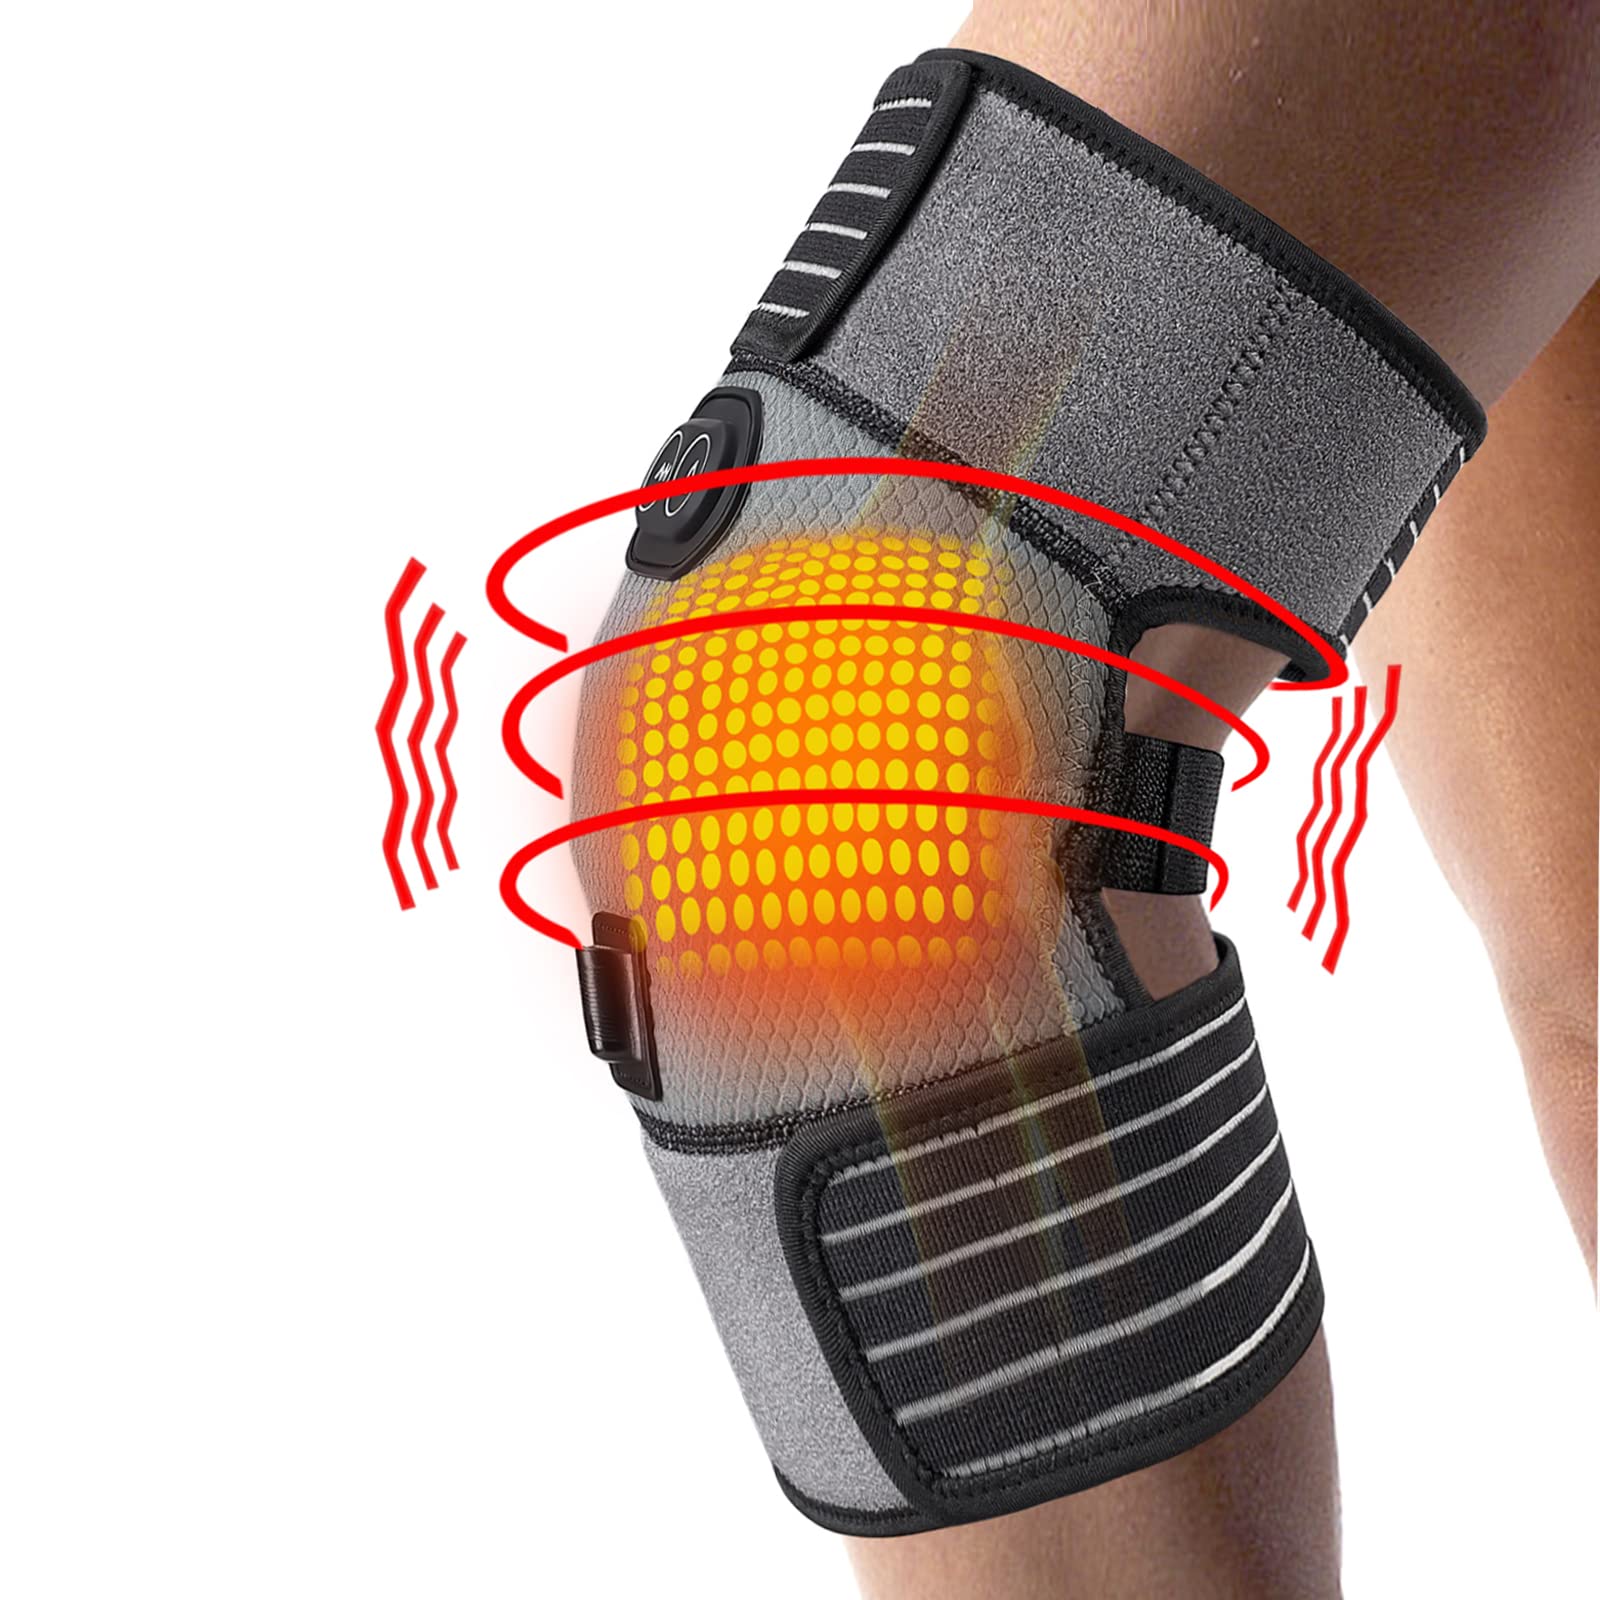 Heating Knee Pad 6 Adjustable Vibrations Electric Heat Knee Brace